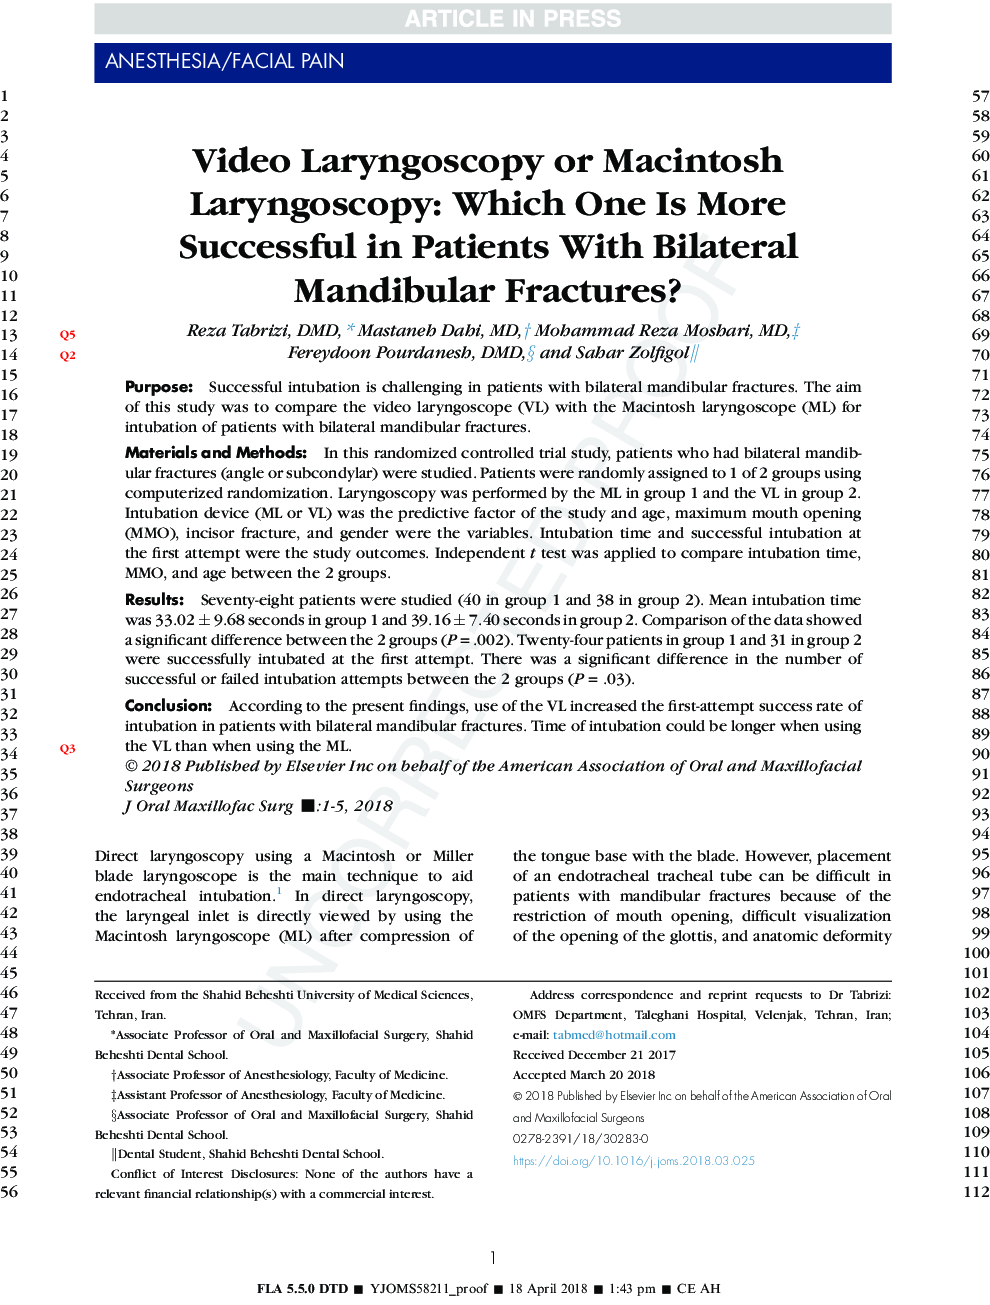 لارنگوسکوپی ویدئو یا لارنگوسکوپی مکینتاش: کدام یک در بیماران مبتلا به شکستگی مندیبول دو طرفه موفق تر است؟